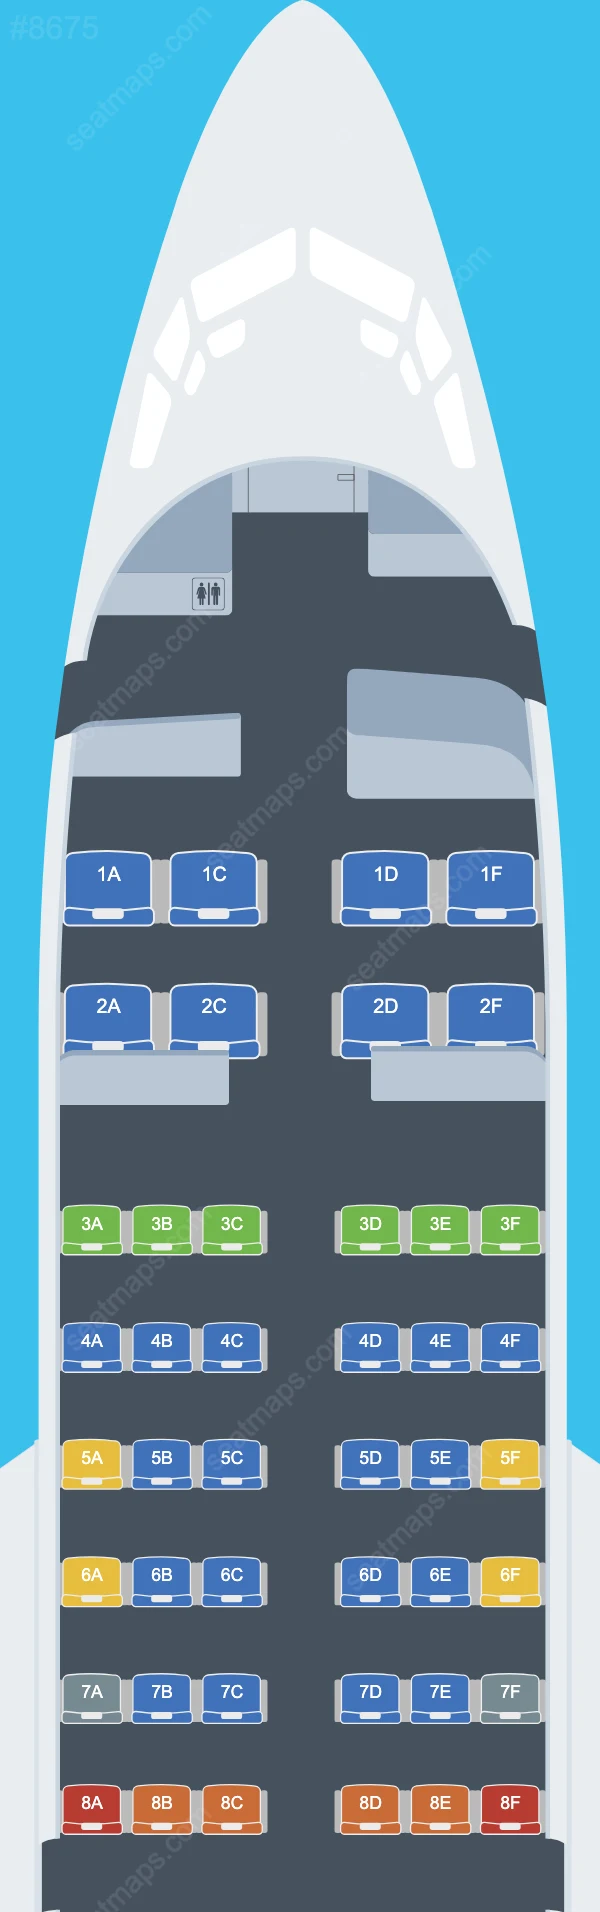 Aero Contractors Boeing 737 Seat Maps 737-500